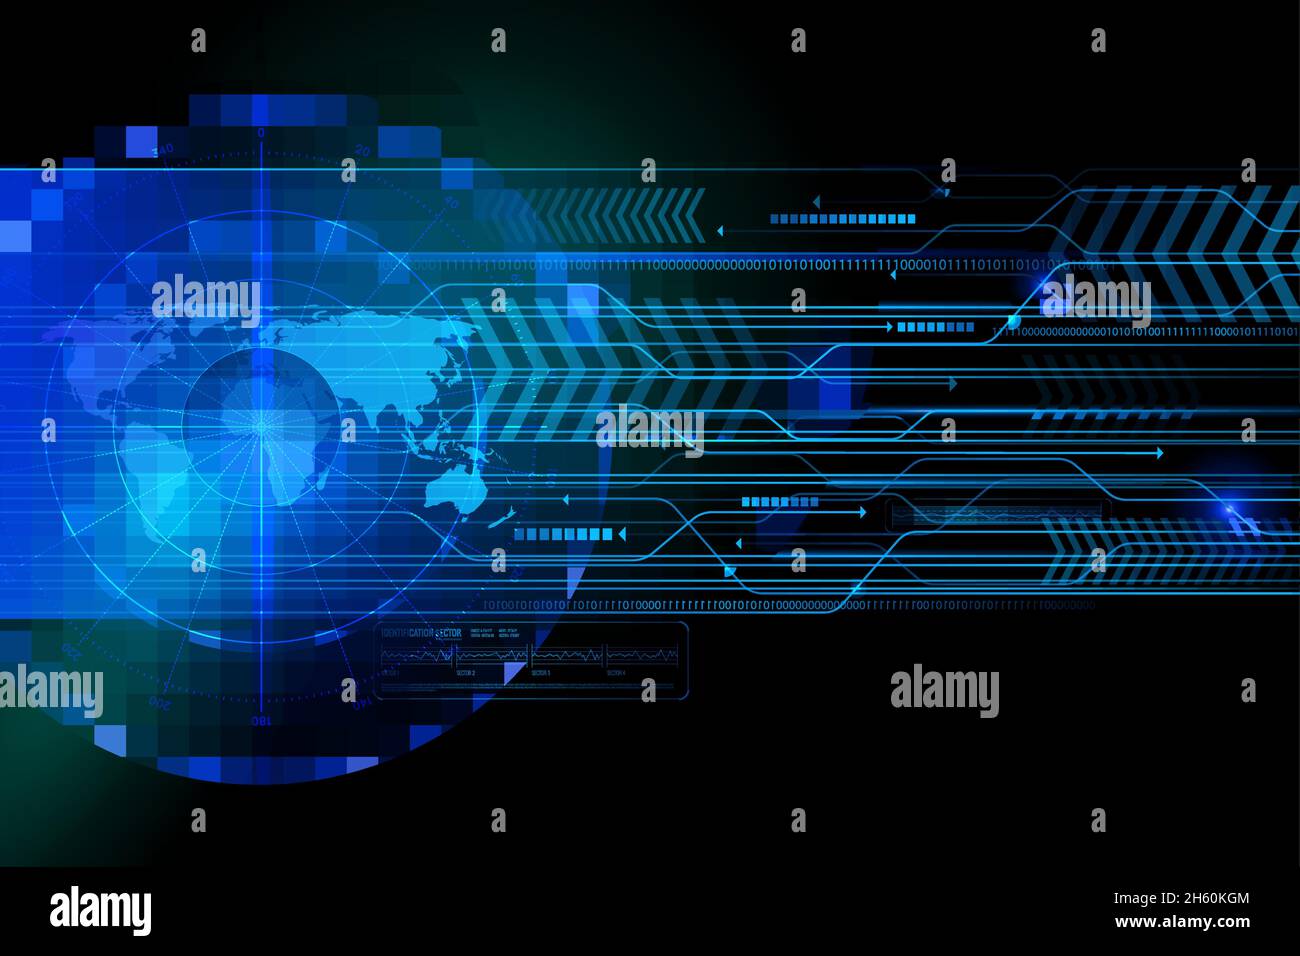 Leuchtende Bildschirm blaue Elemente der Suche Radar mit Weltkarte, Identifizierungsinformationen auf schwarzem Hintergrund Vektor-Illustration Stock Vektor